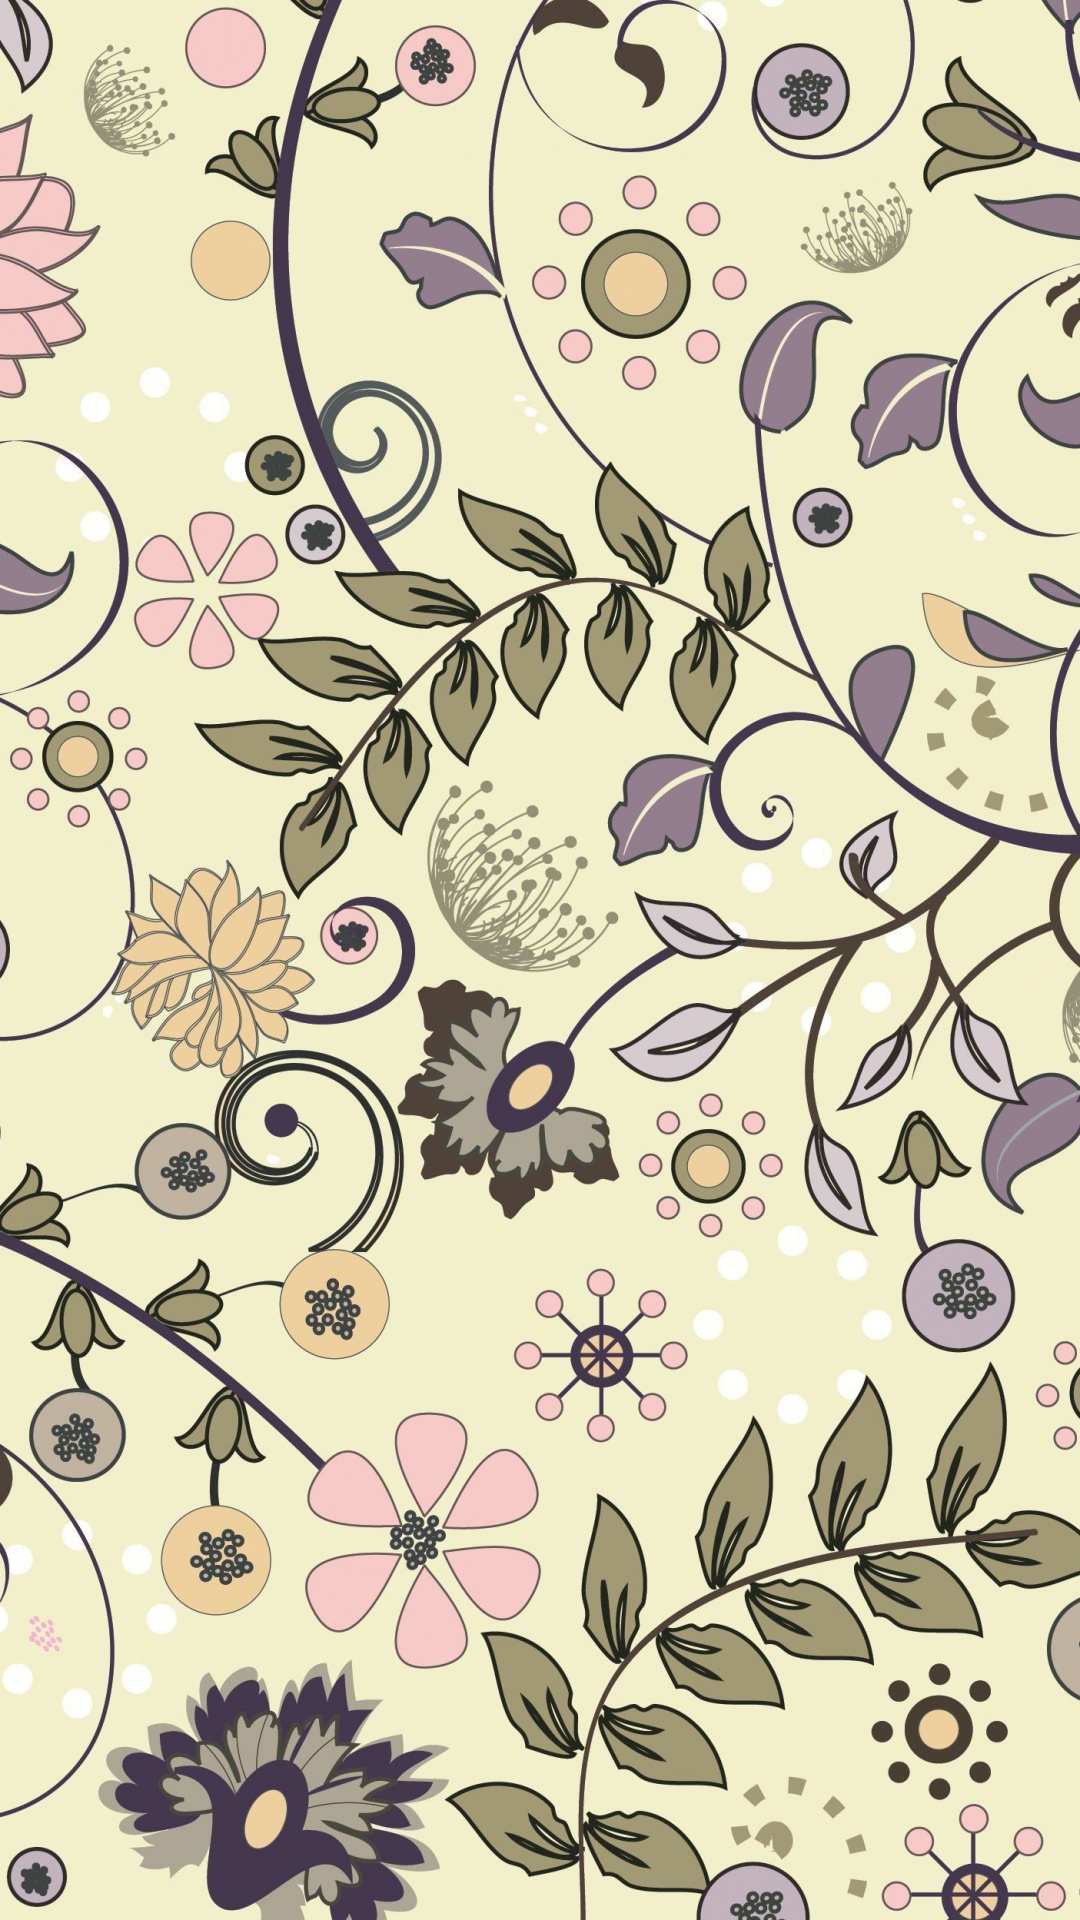 剪贴画的, 矢量图形, 花卉设计, 淡紫色的, 花安排 壁纸 1080x1920 允许